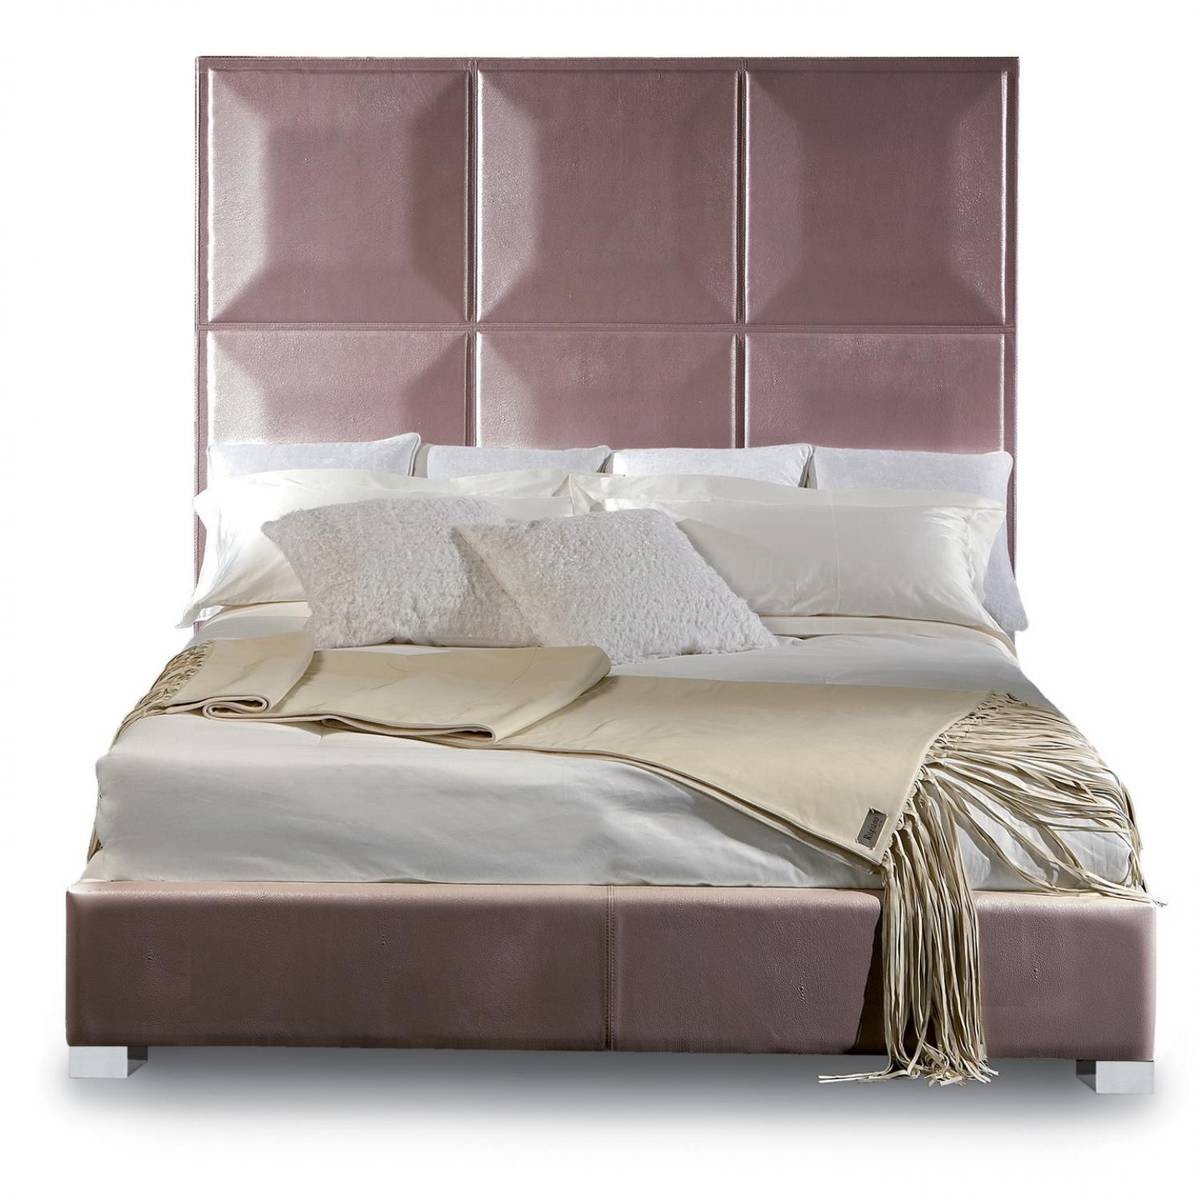 Кровать с мягким изголовьем Migaori/2051 из Италии фабрики RUGIANO